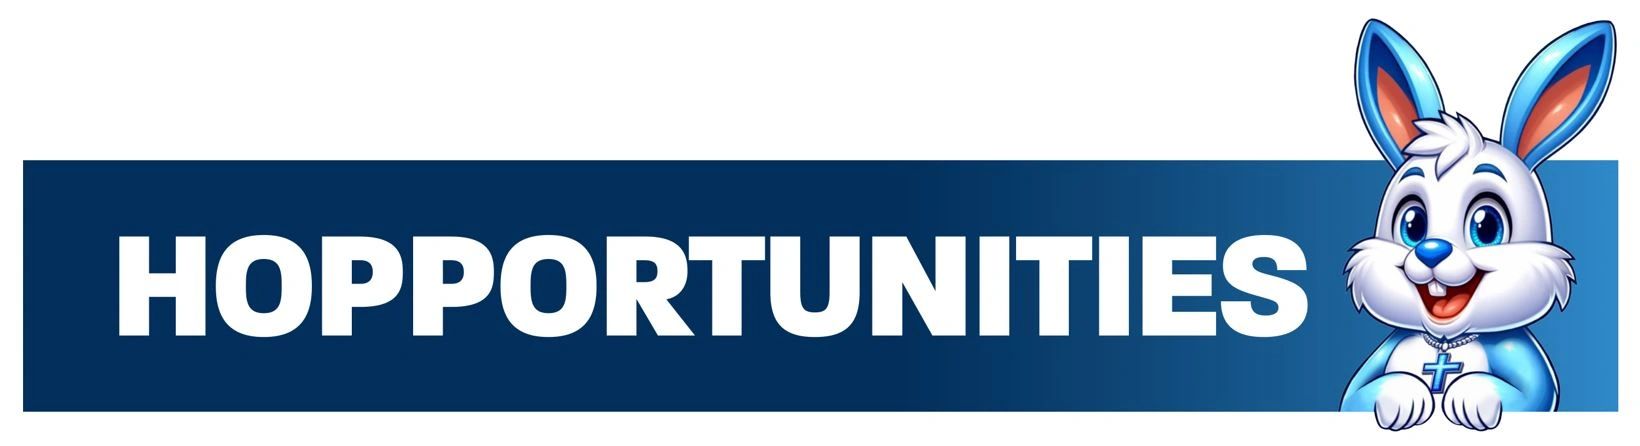 Hopportunities, Inc. Banner